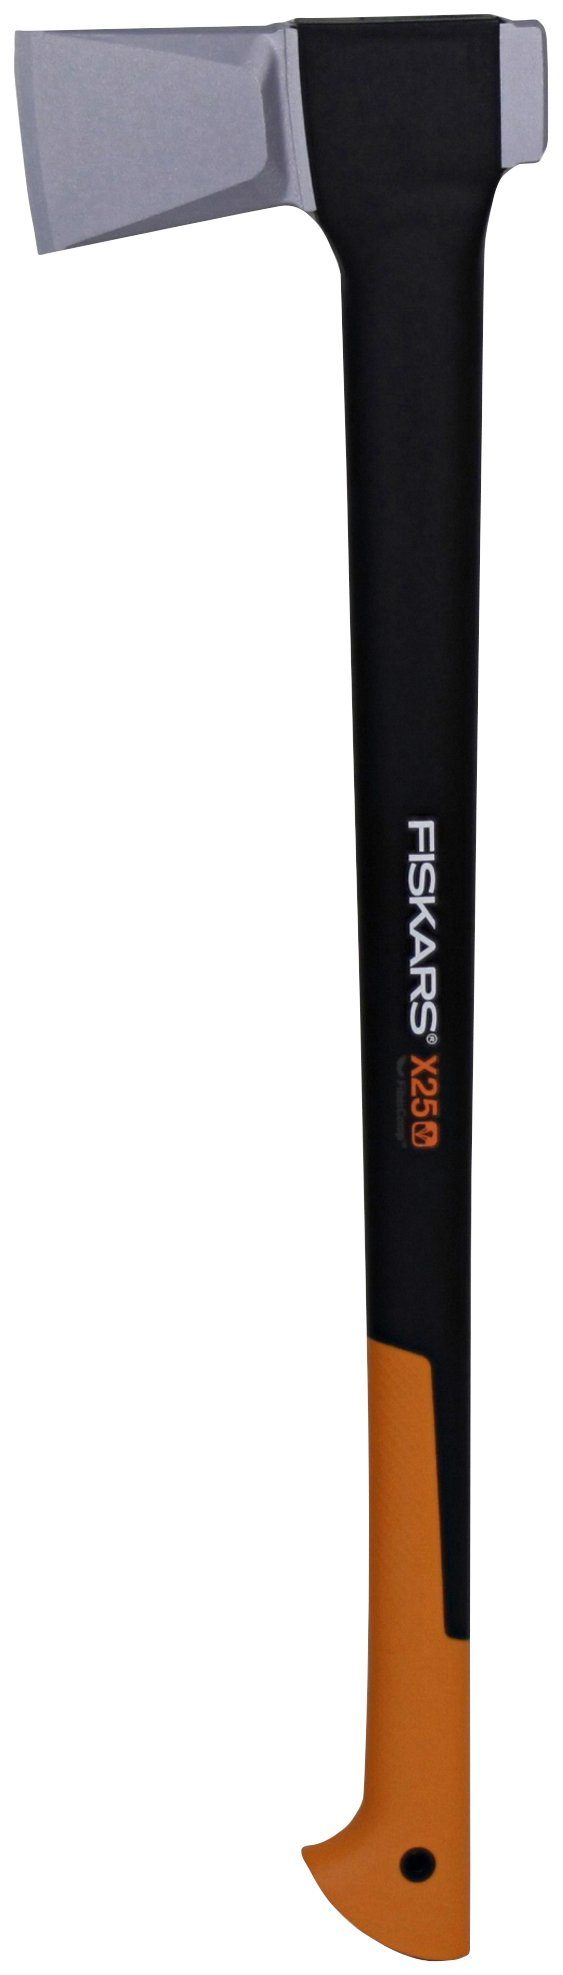 Fiskars Spaltaxt »X25-XL«, 2580 g, 72 cm Länge, für große Stammstücke bis  30 cm online kaufen | OTTO